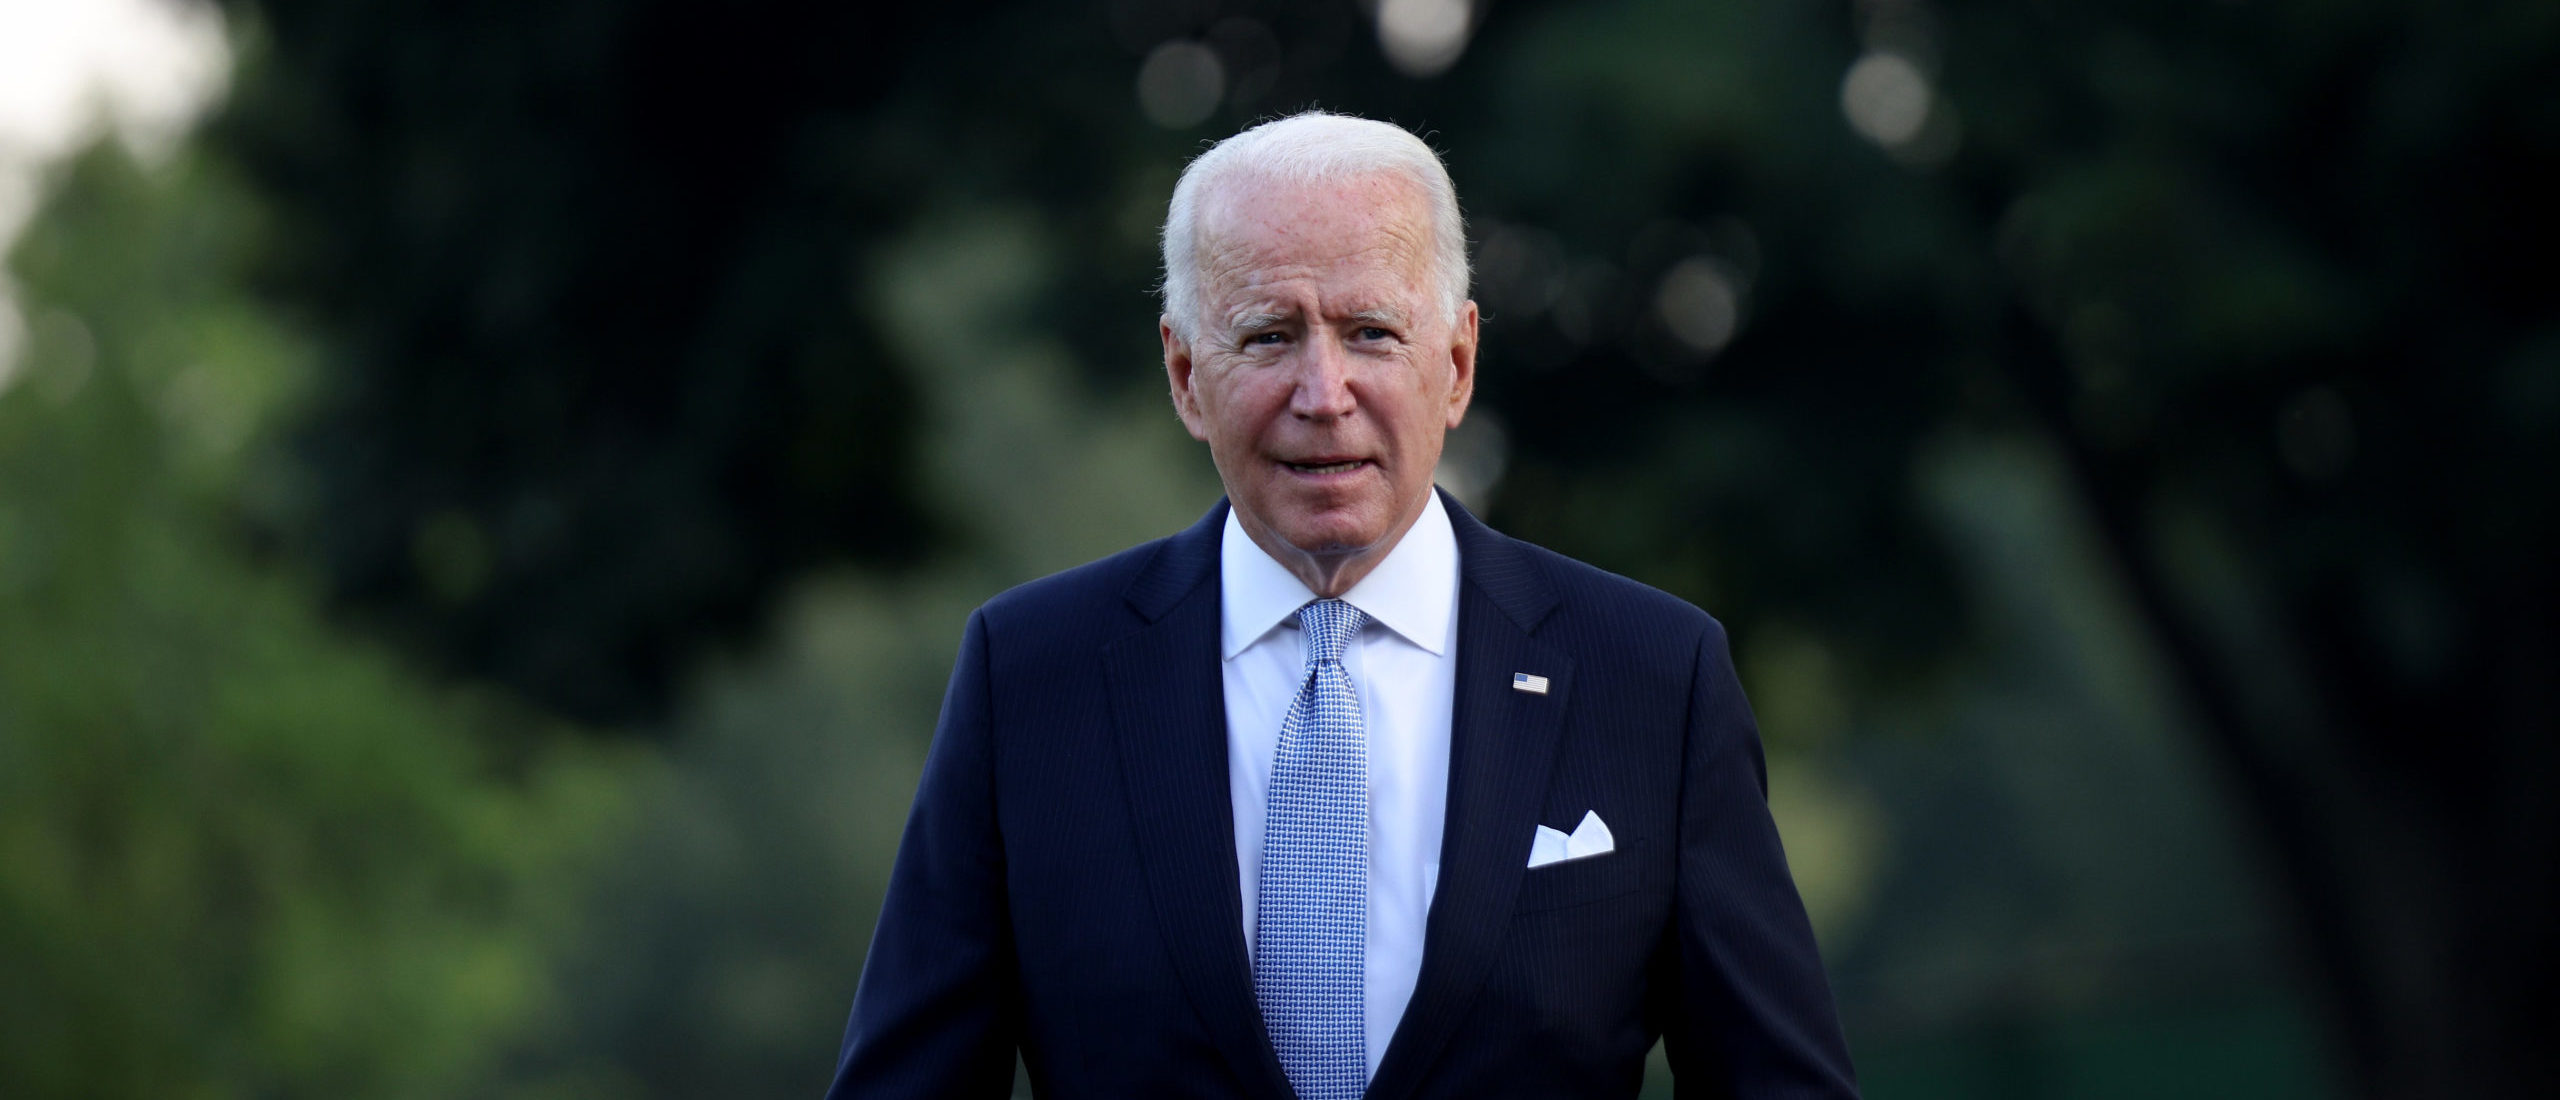 El gobierno de Biden presenta una nueva estrategia nacional para combatir el creciente antisemitismo